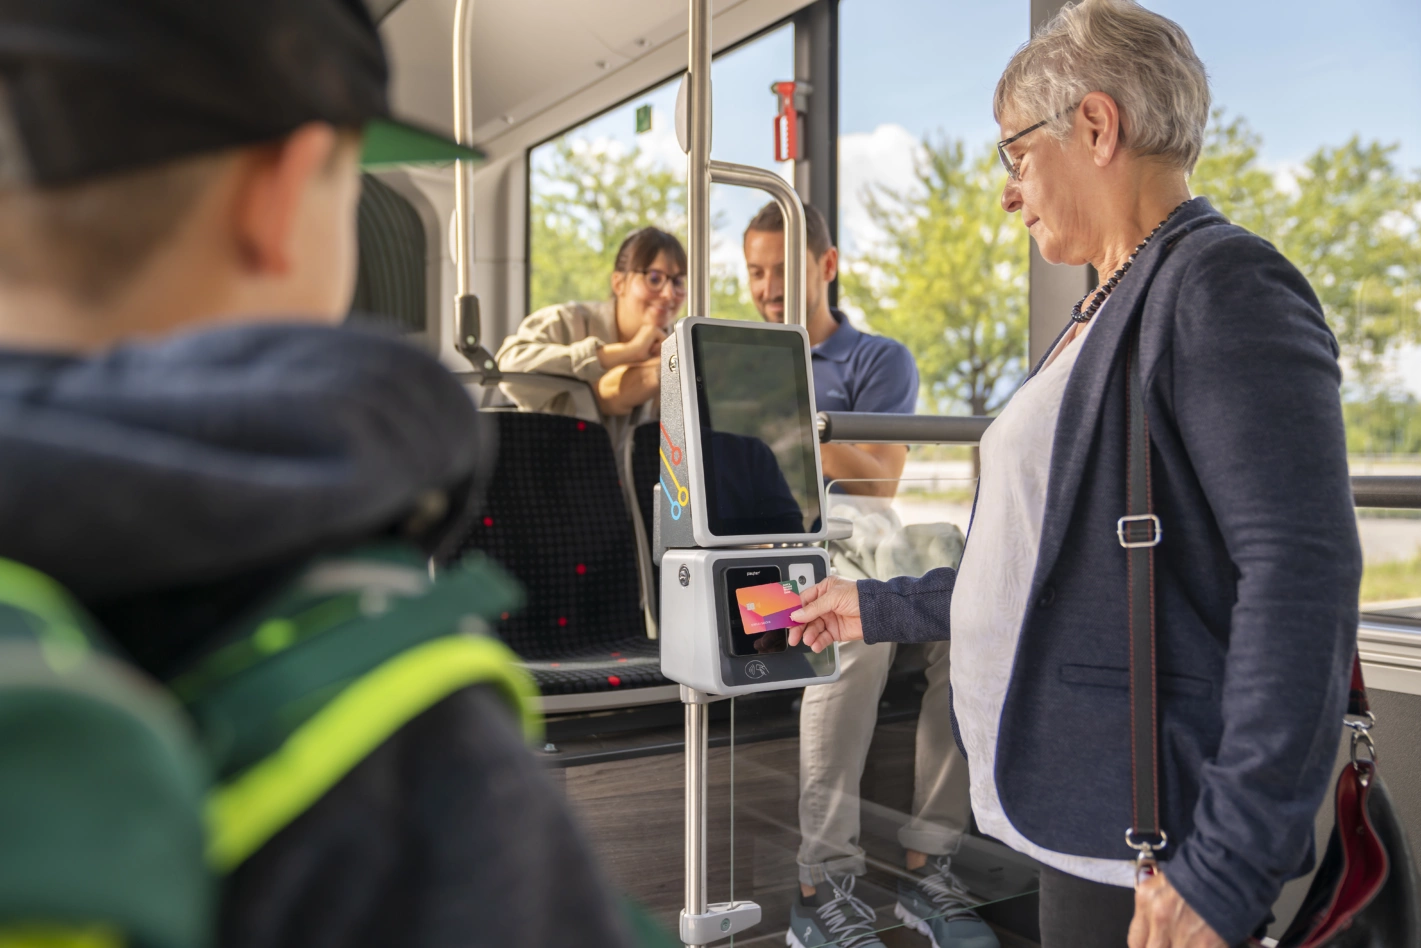 Bei Chur Bus bereits im Einsatz, bei Postauto kommt er ab 2026: Der digitale Venda-Billettautomat. Foto: zvg